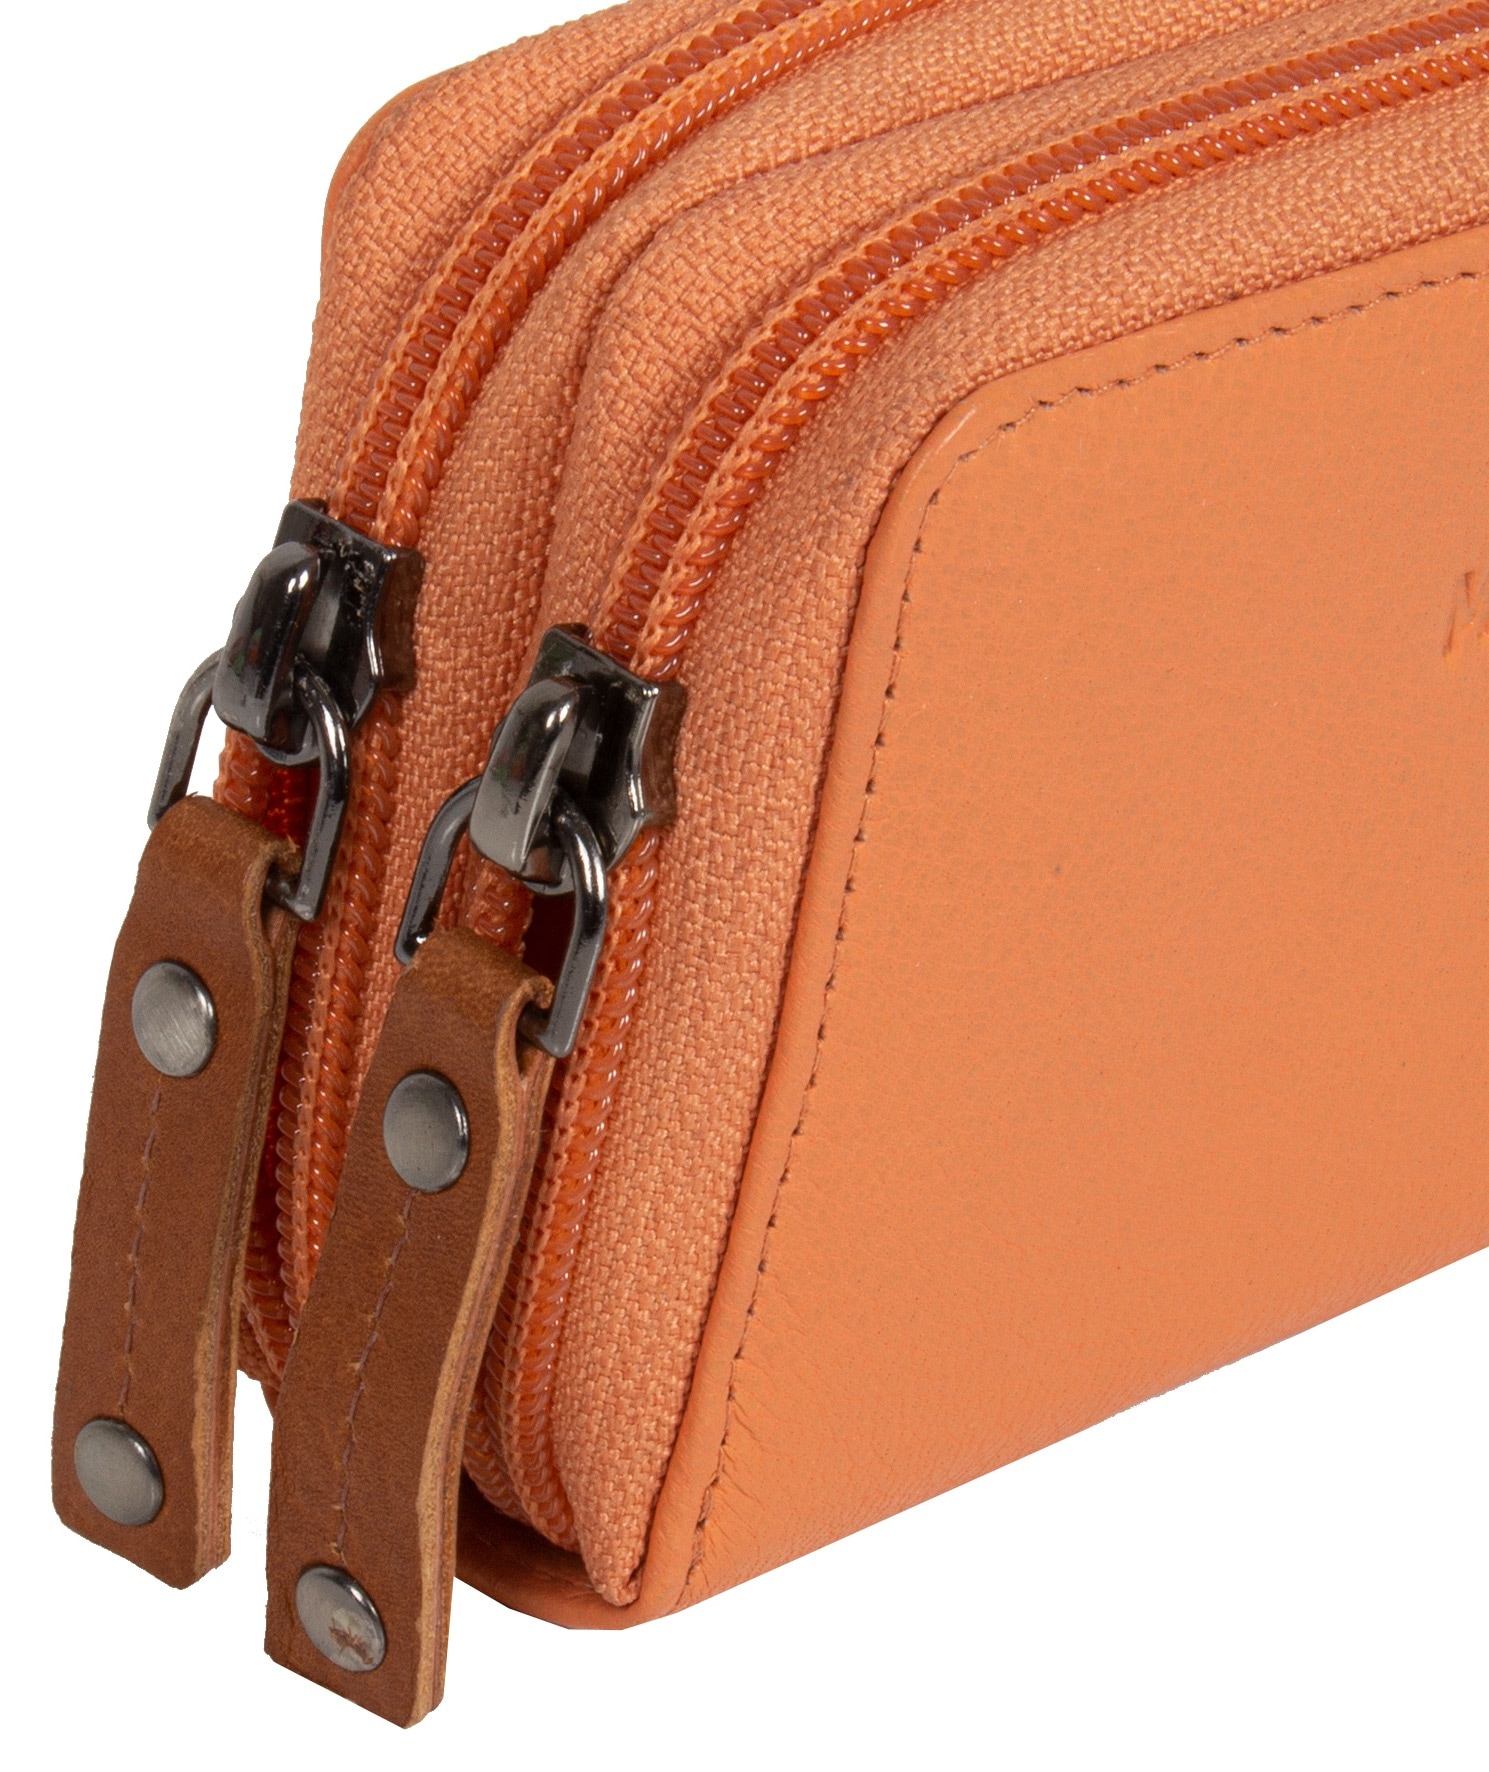 MUSTANG Geldbörse »Seattle leather wallet 2 zip top opening«, im  praktischem Format kaufen | UNIVERSAL